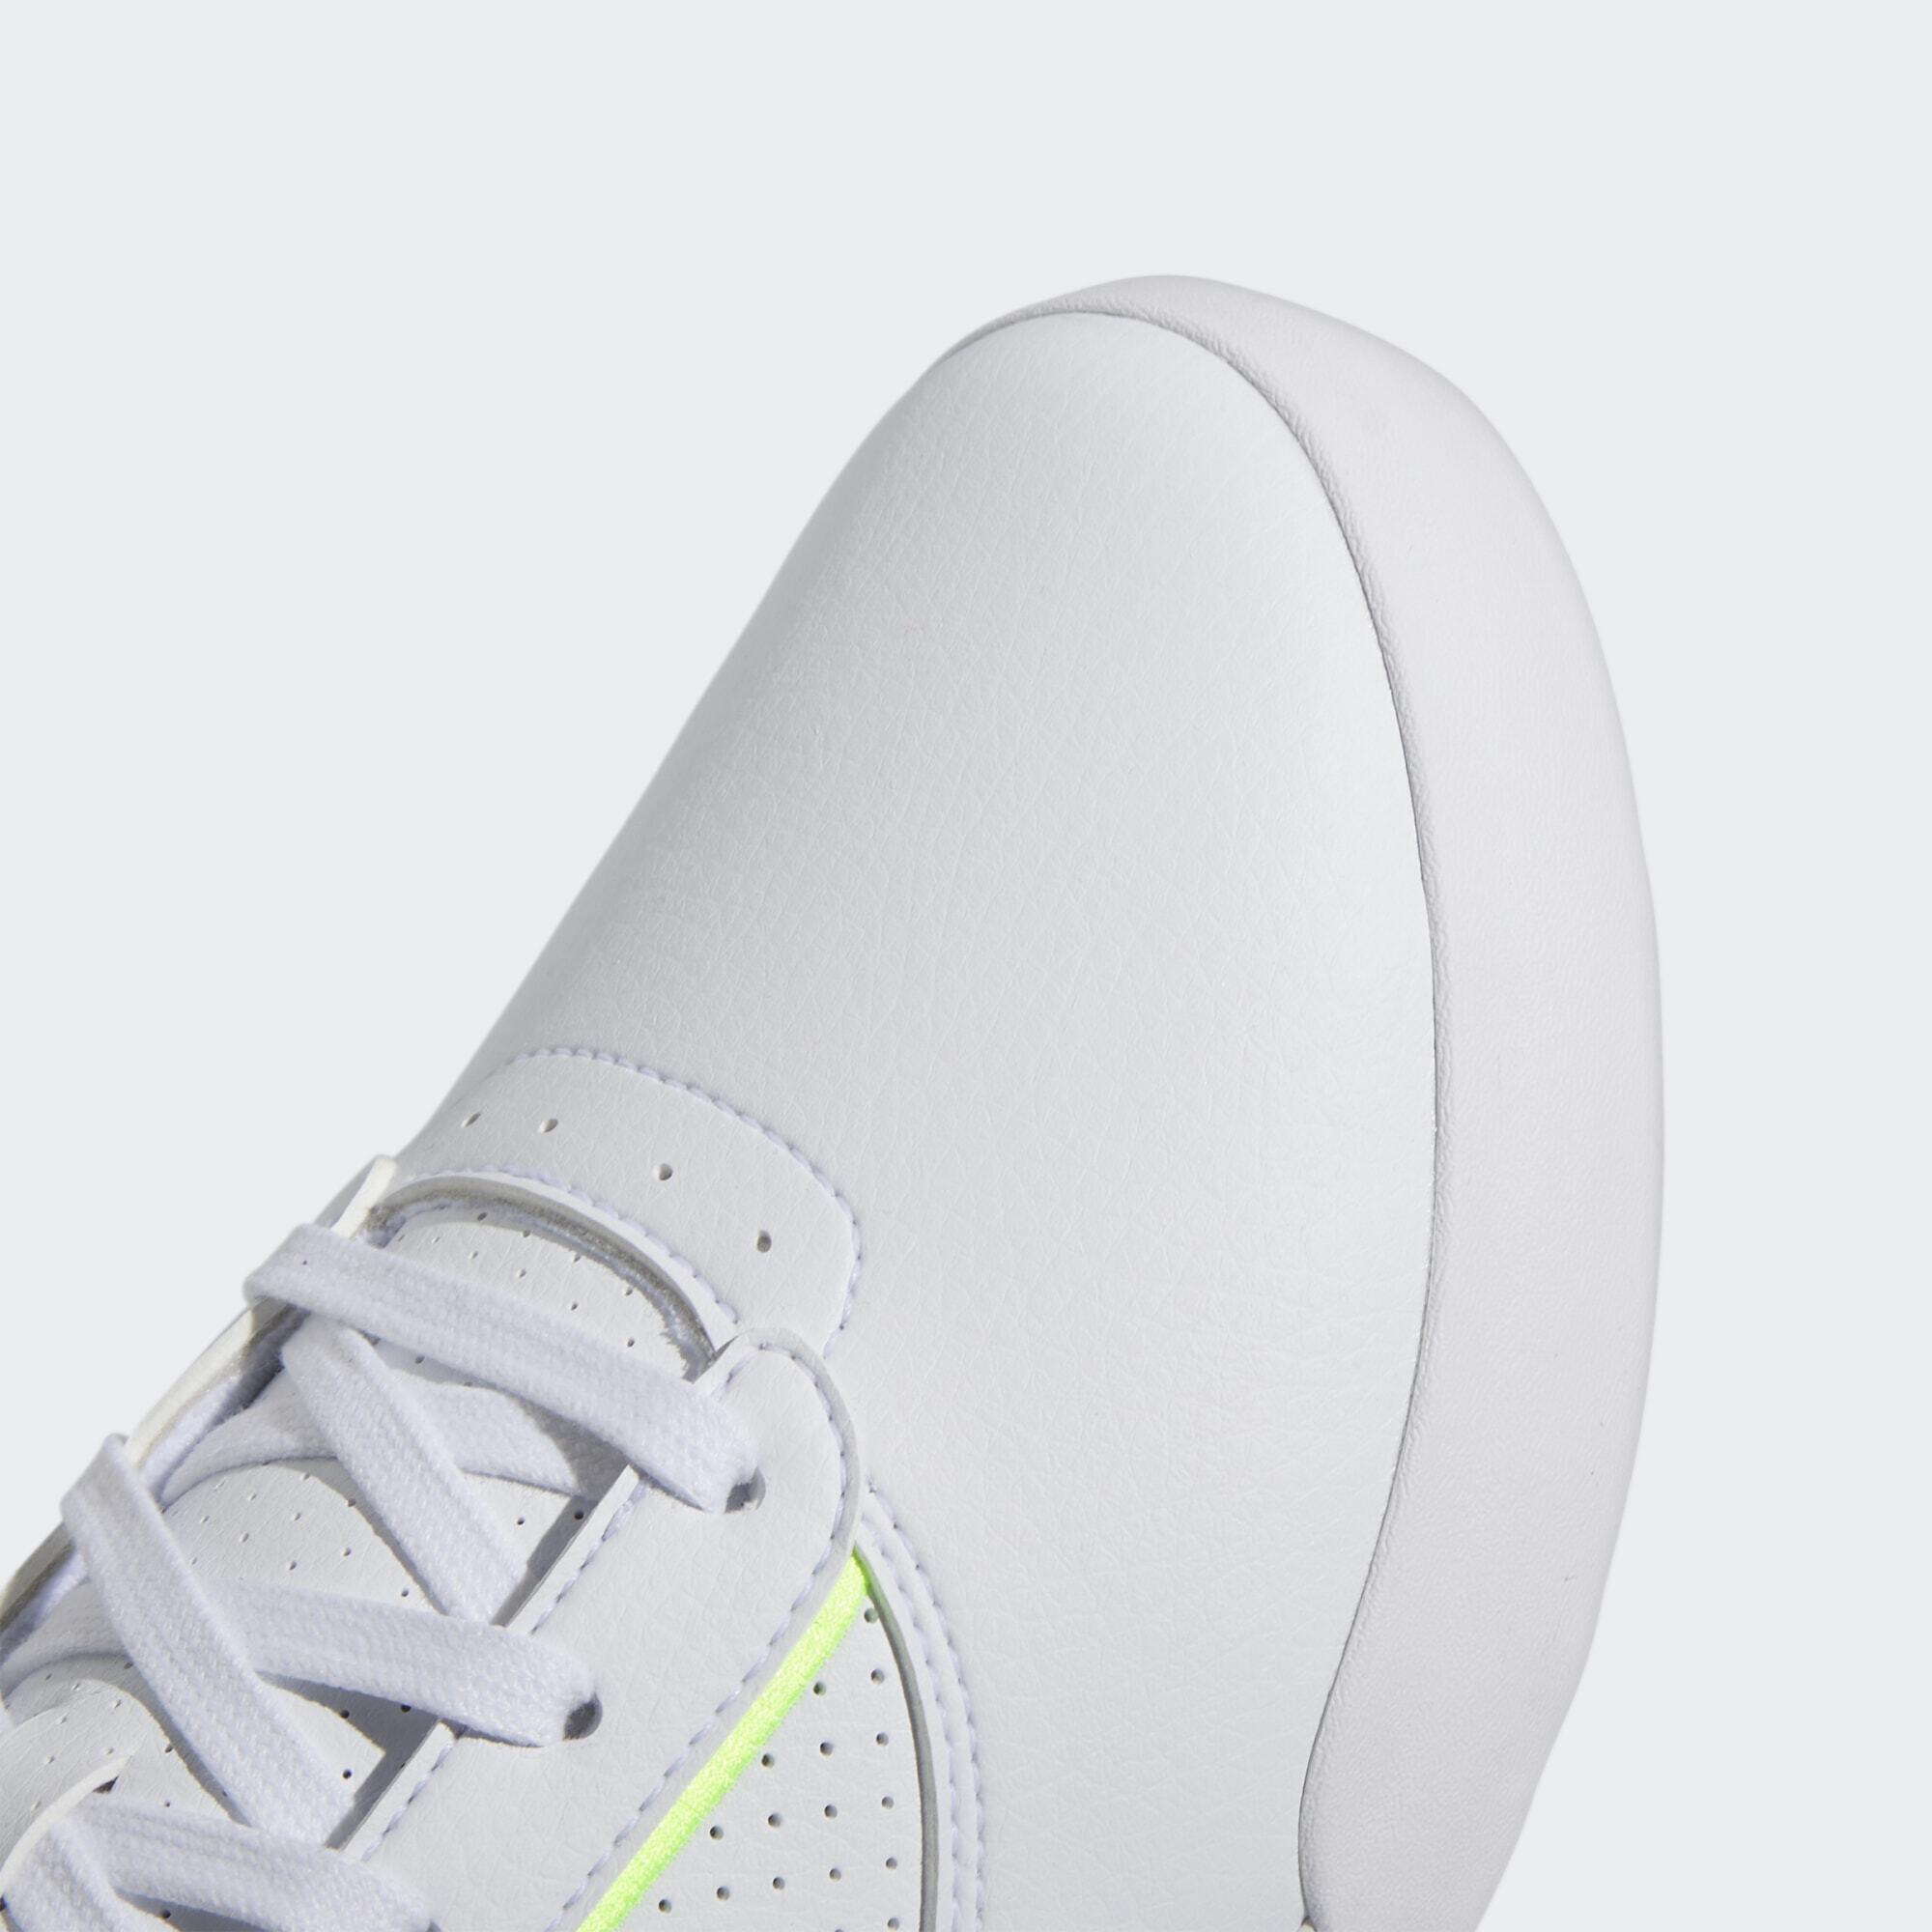 Retrocross Spikeless Golf Shoes 6/7